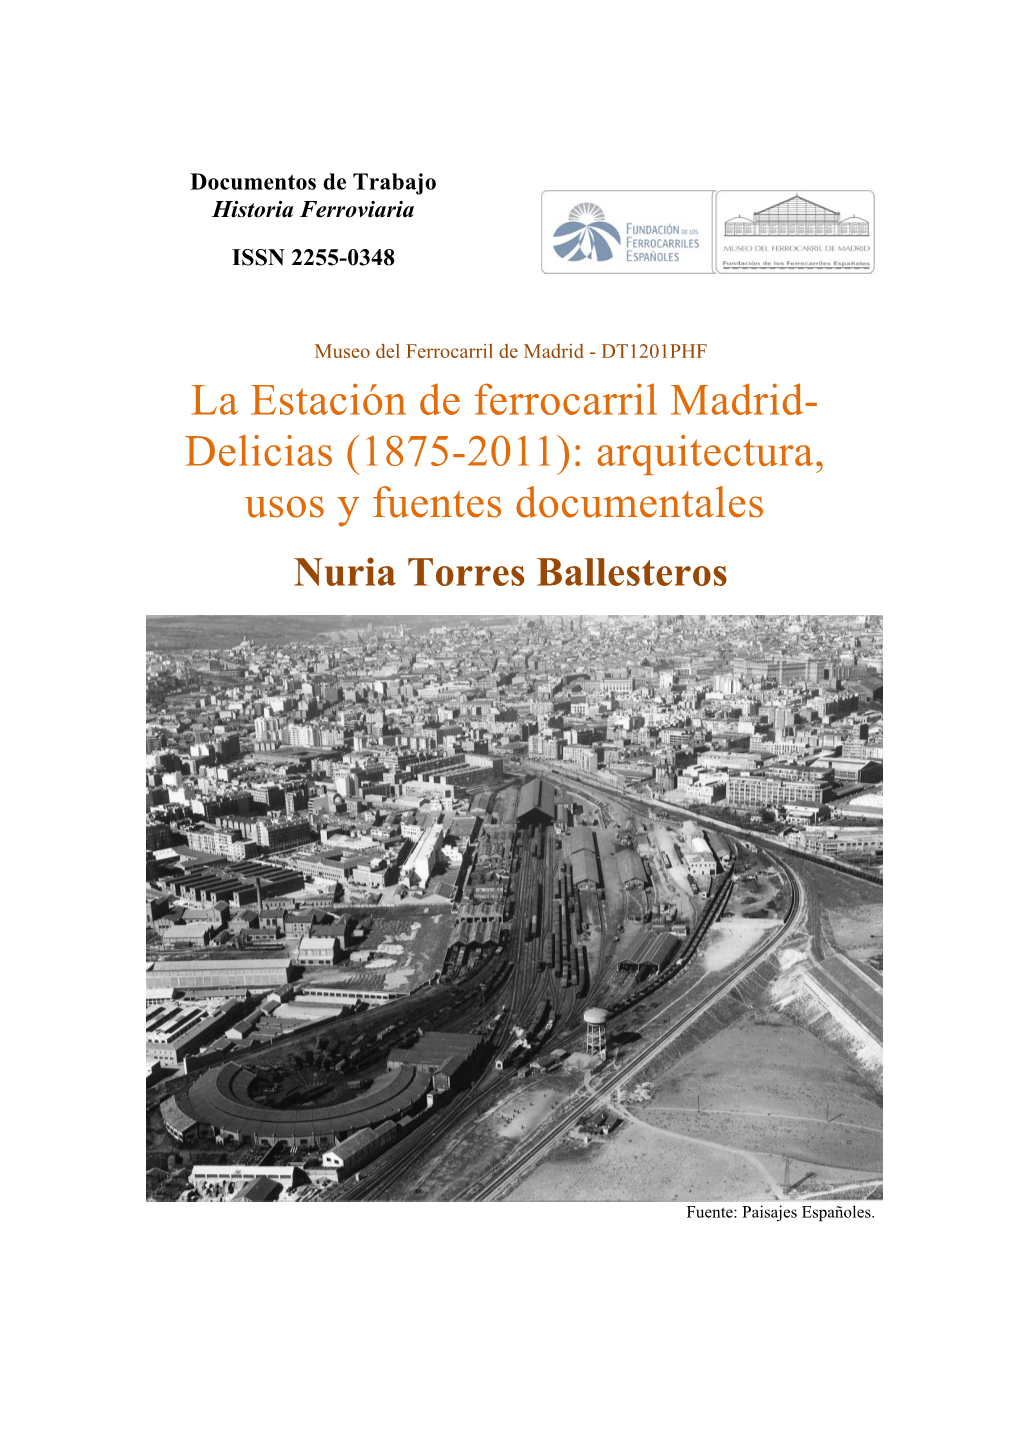 La Estación De Ferrocarril Madrid- Delicias (1875-2011): Arquitectura, Usos Y Fuentes Documentales Nuria Torres Ballesteros